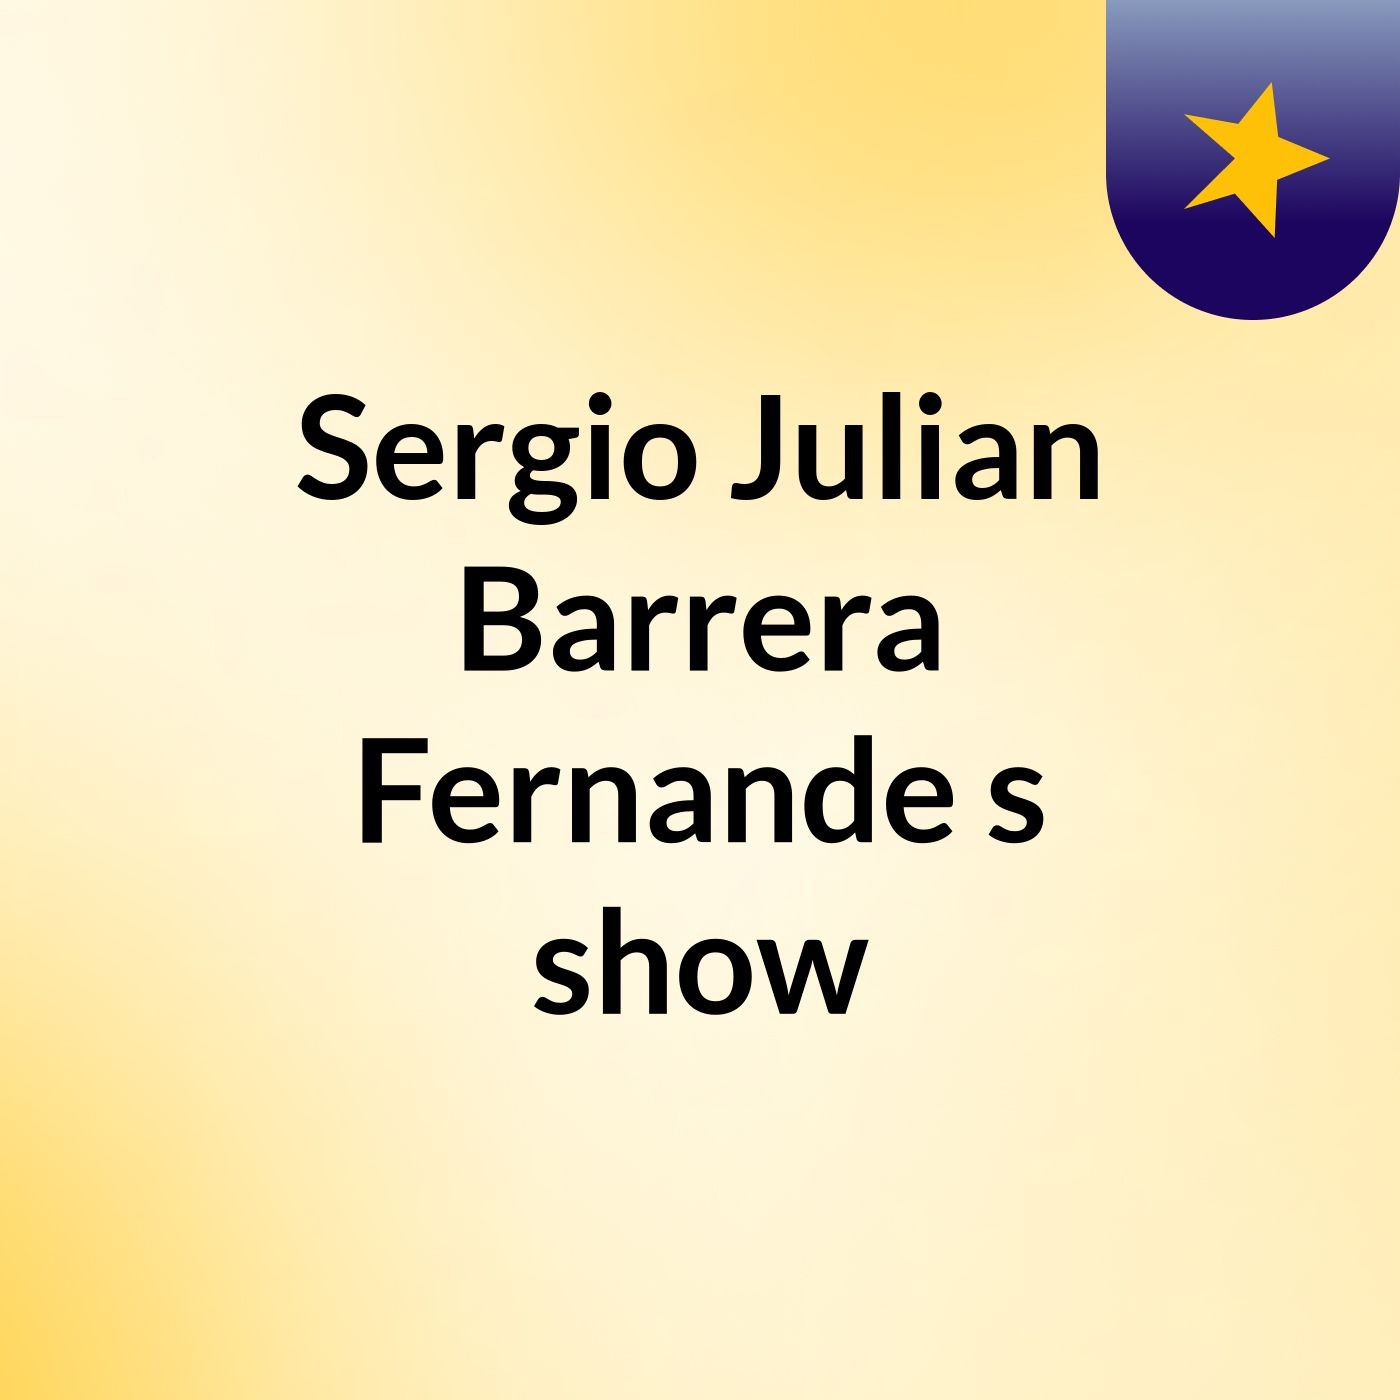 Sergio Julian Barrera Fernande's show